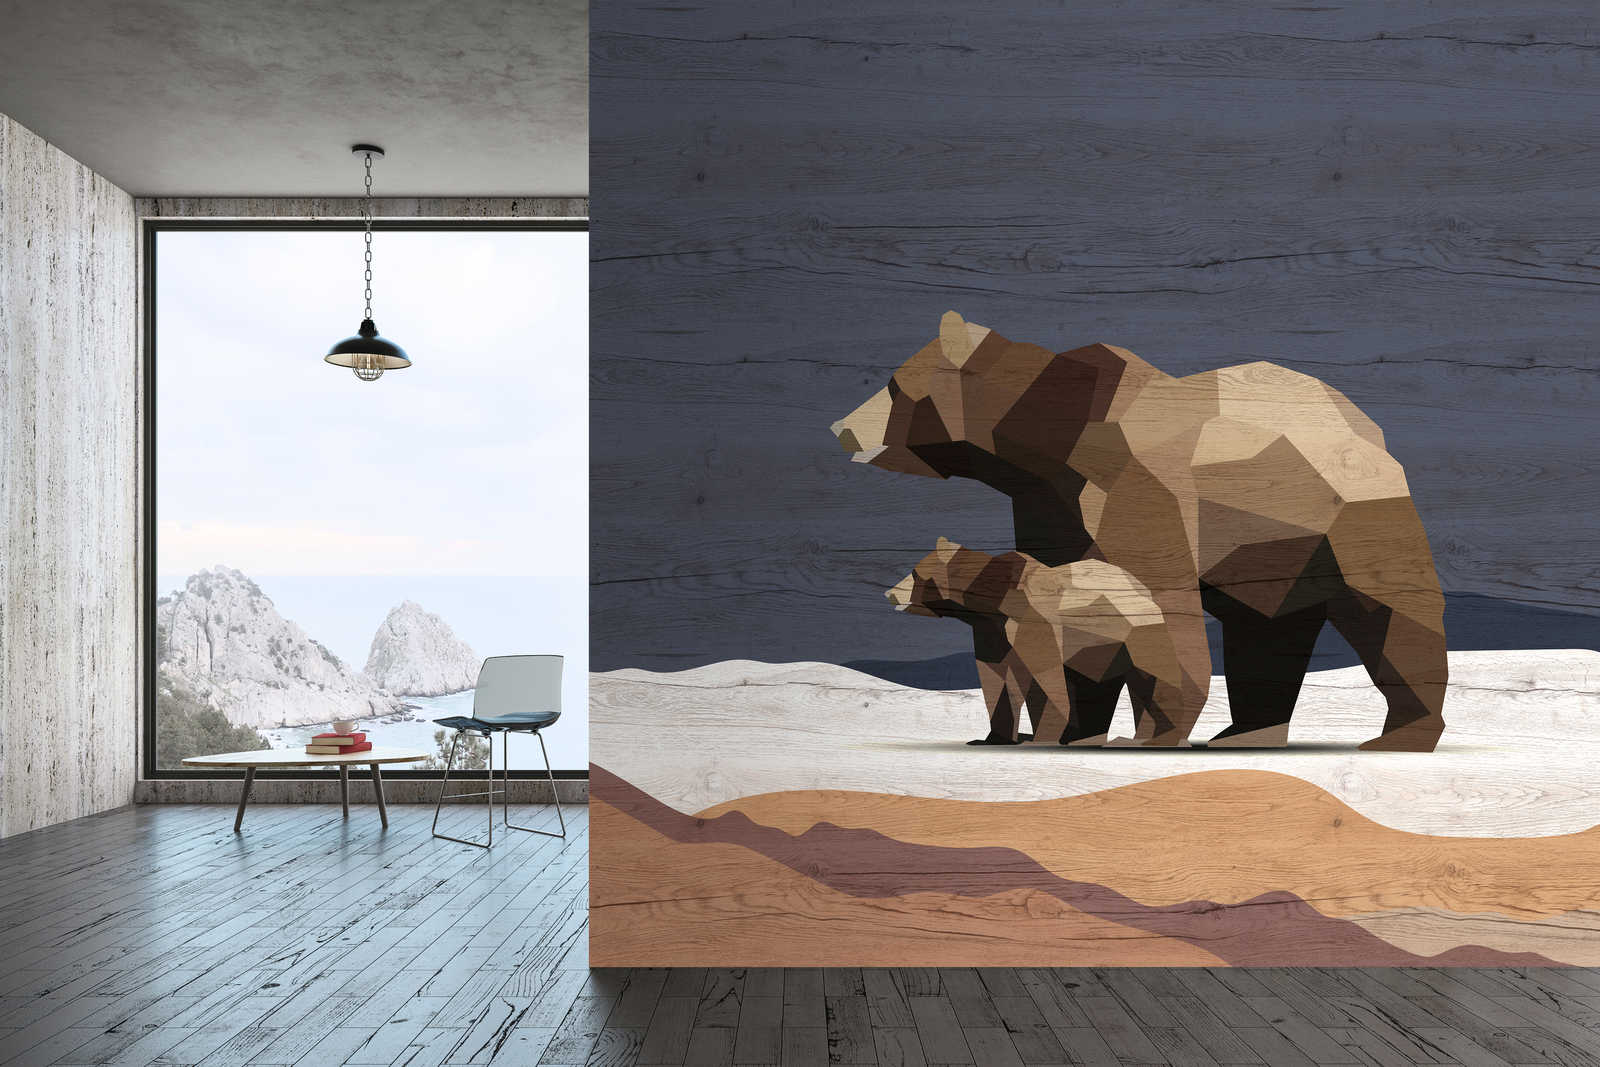             Yukon 3 - Berenfamilie muurschildering in facetdesign & houtlook
        